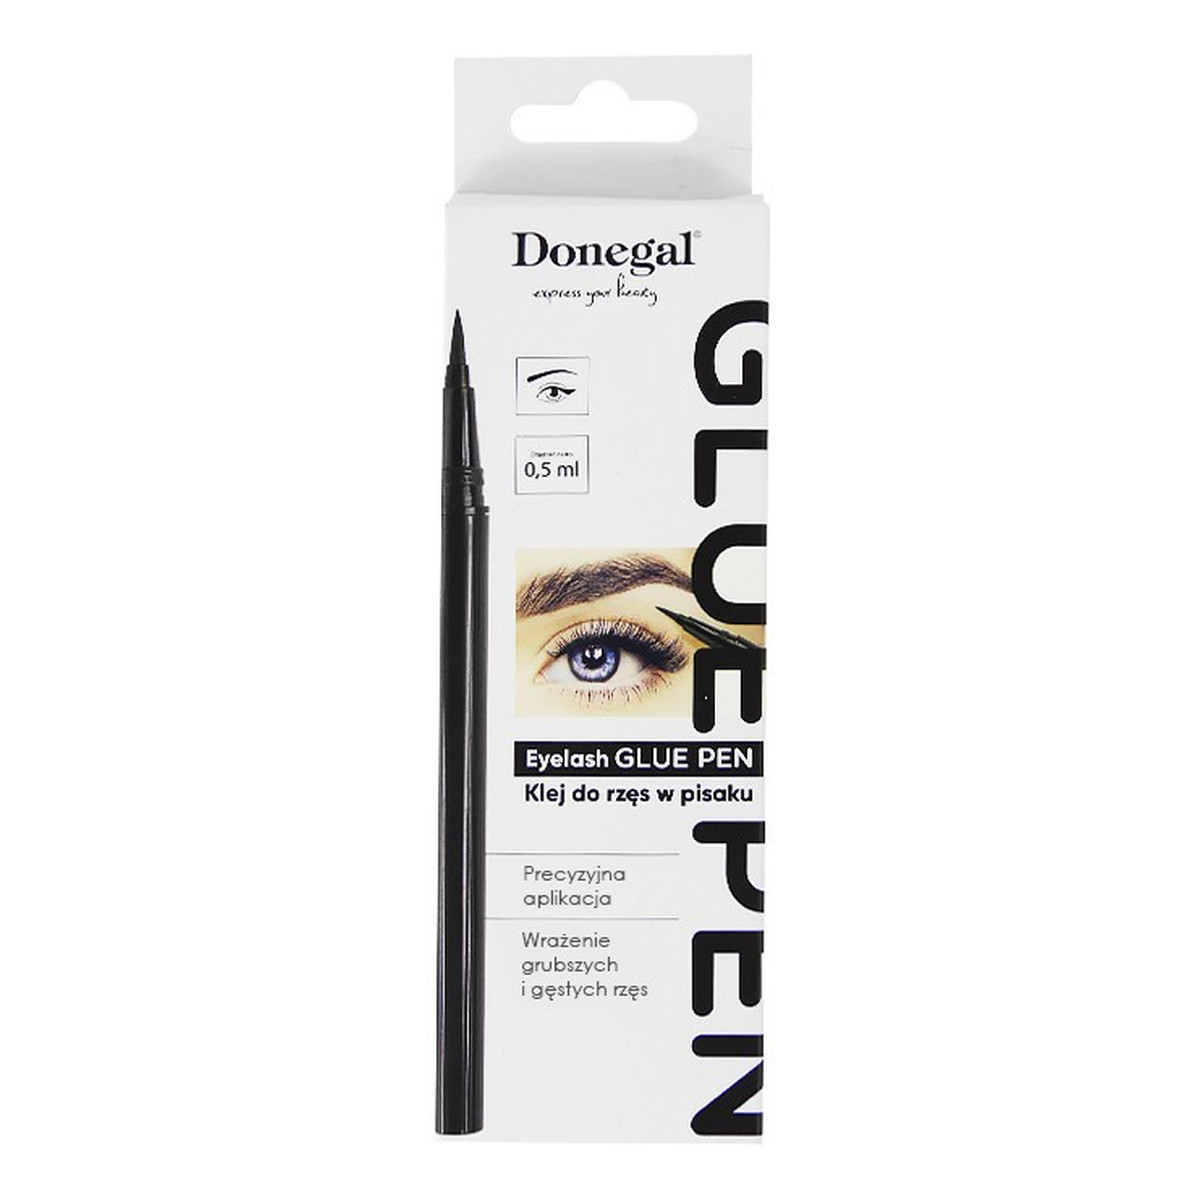 Donegal Klej do sztucznych rzęs w pisaku Glue Pen (4434) 1szt